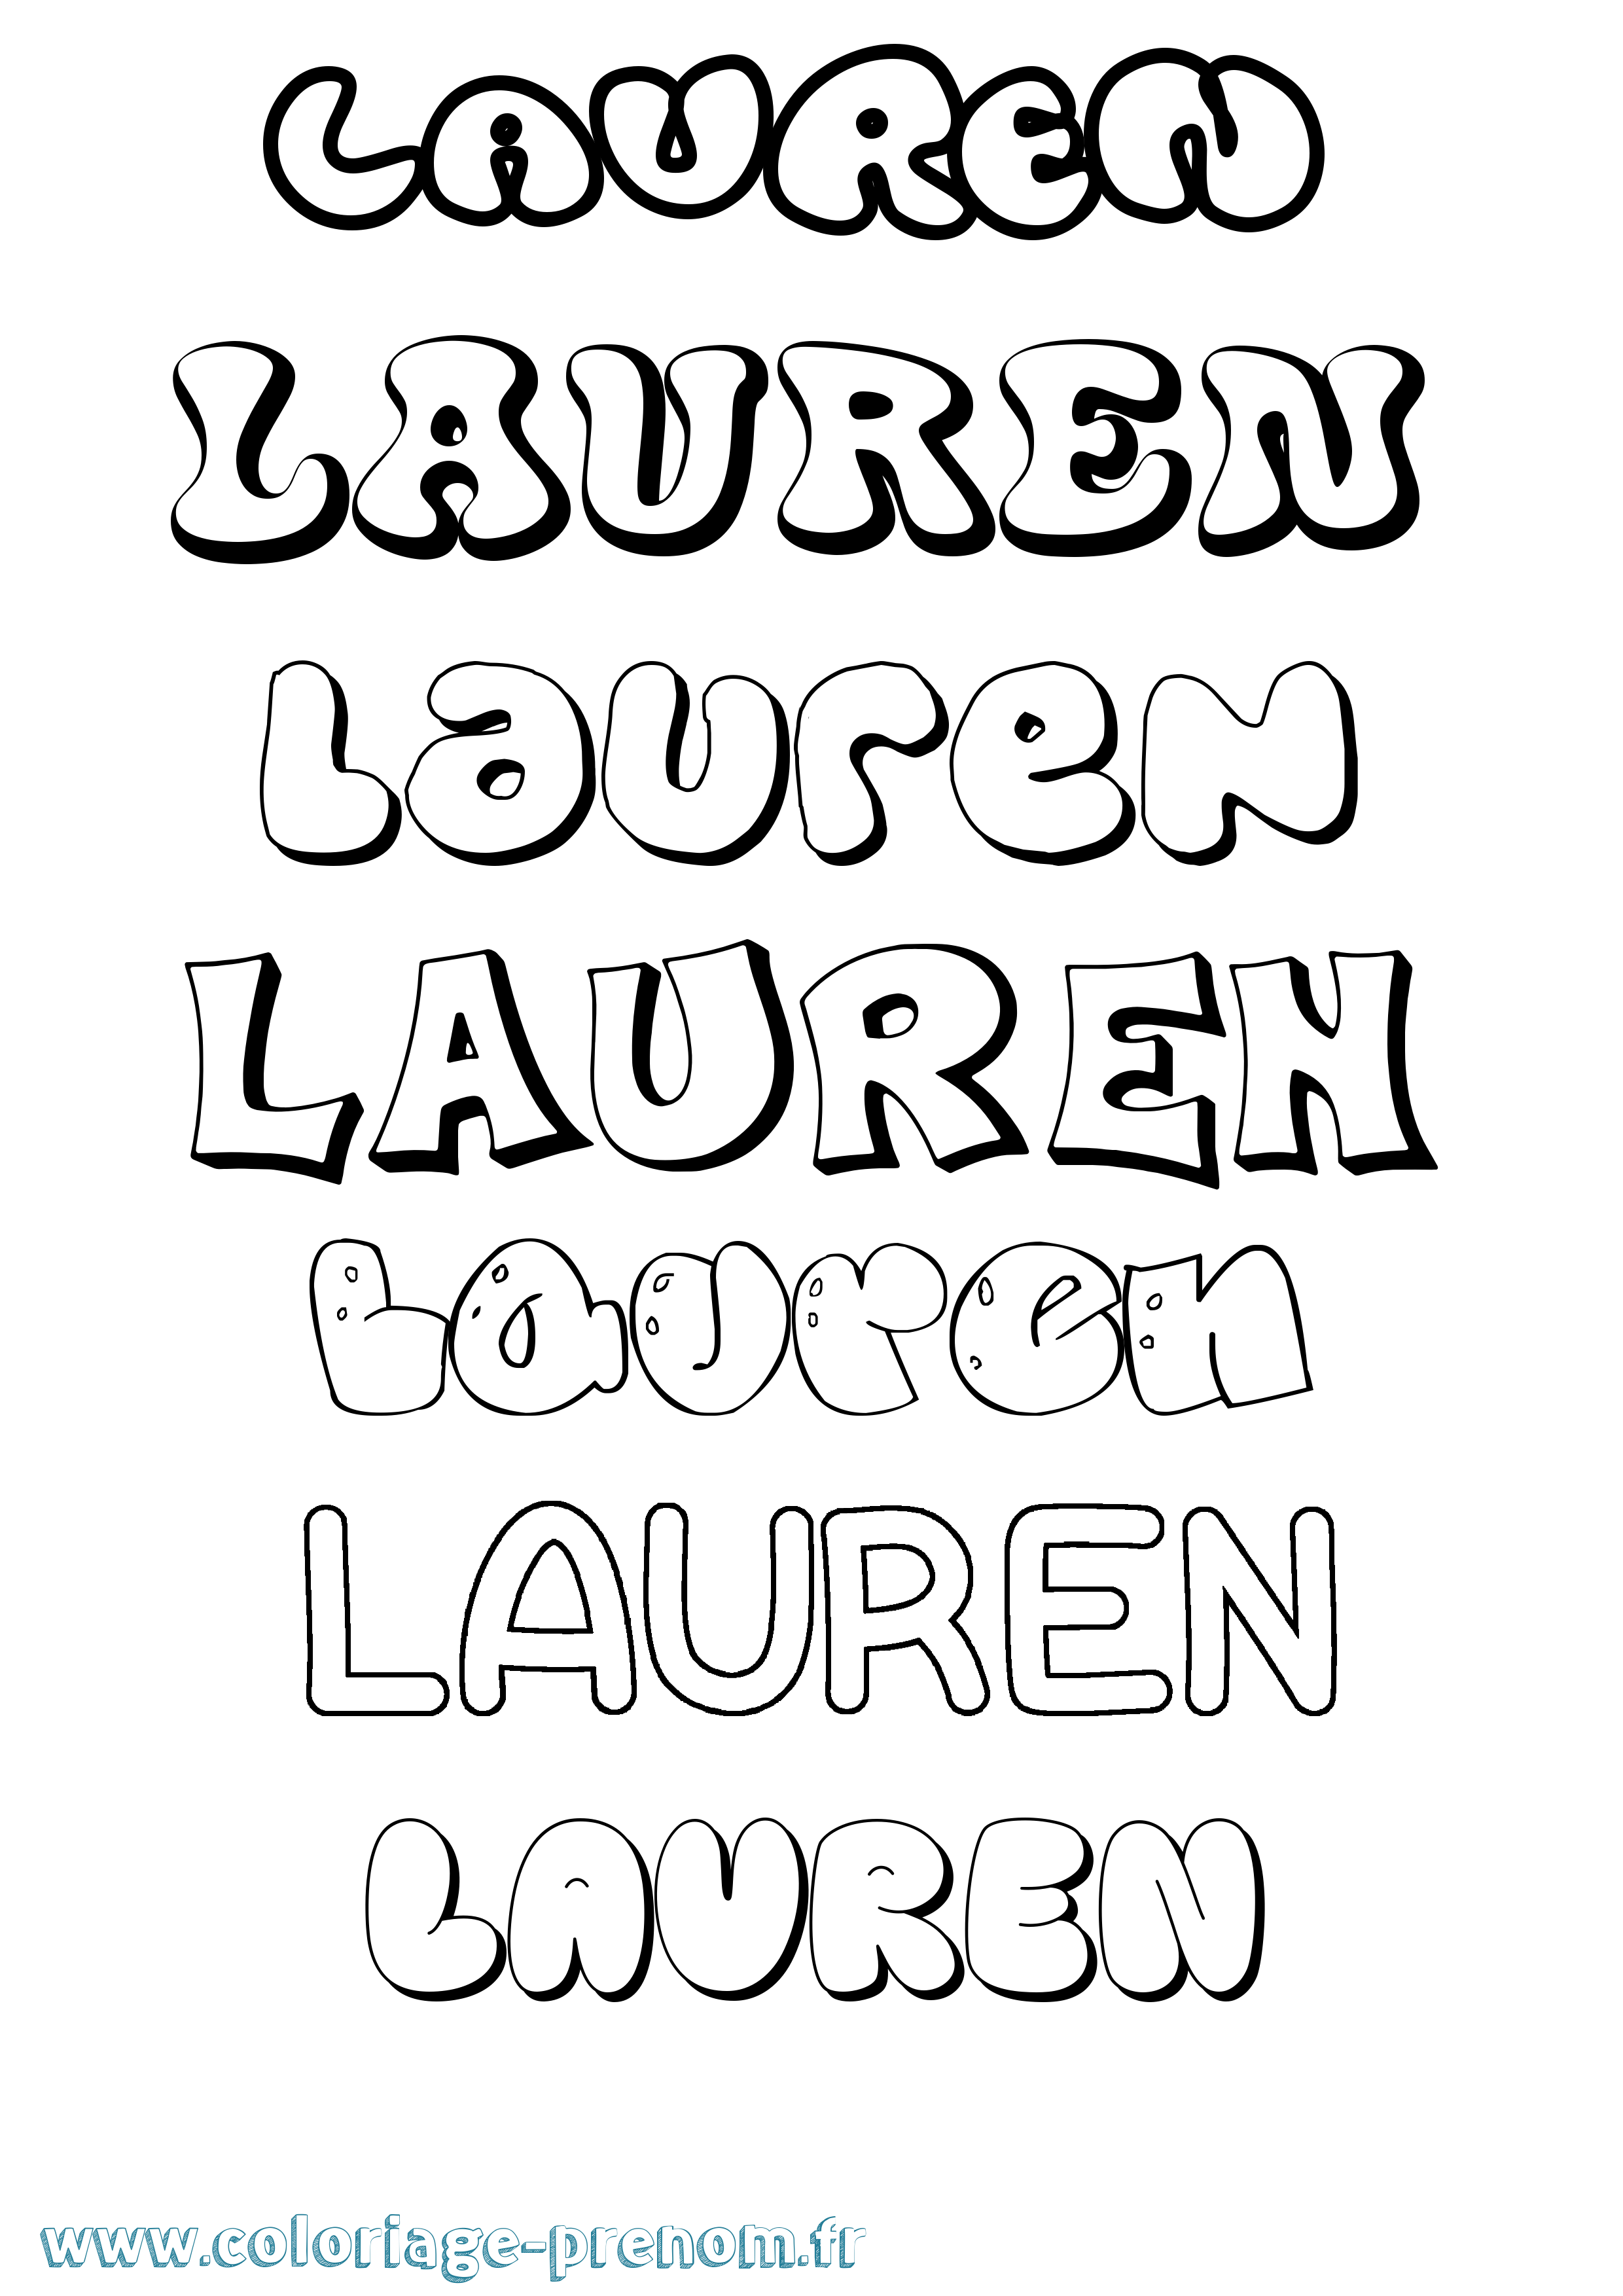 Coloriage prénom Lauren Bubble